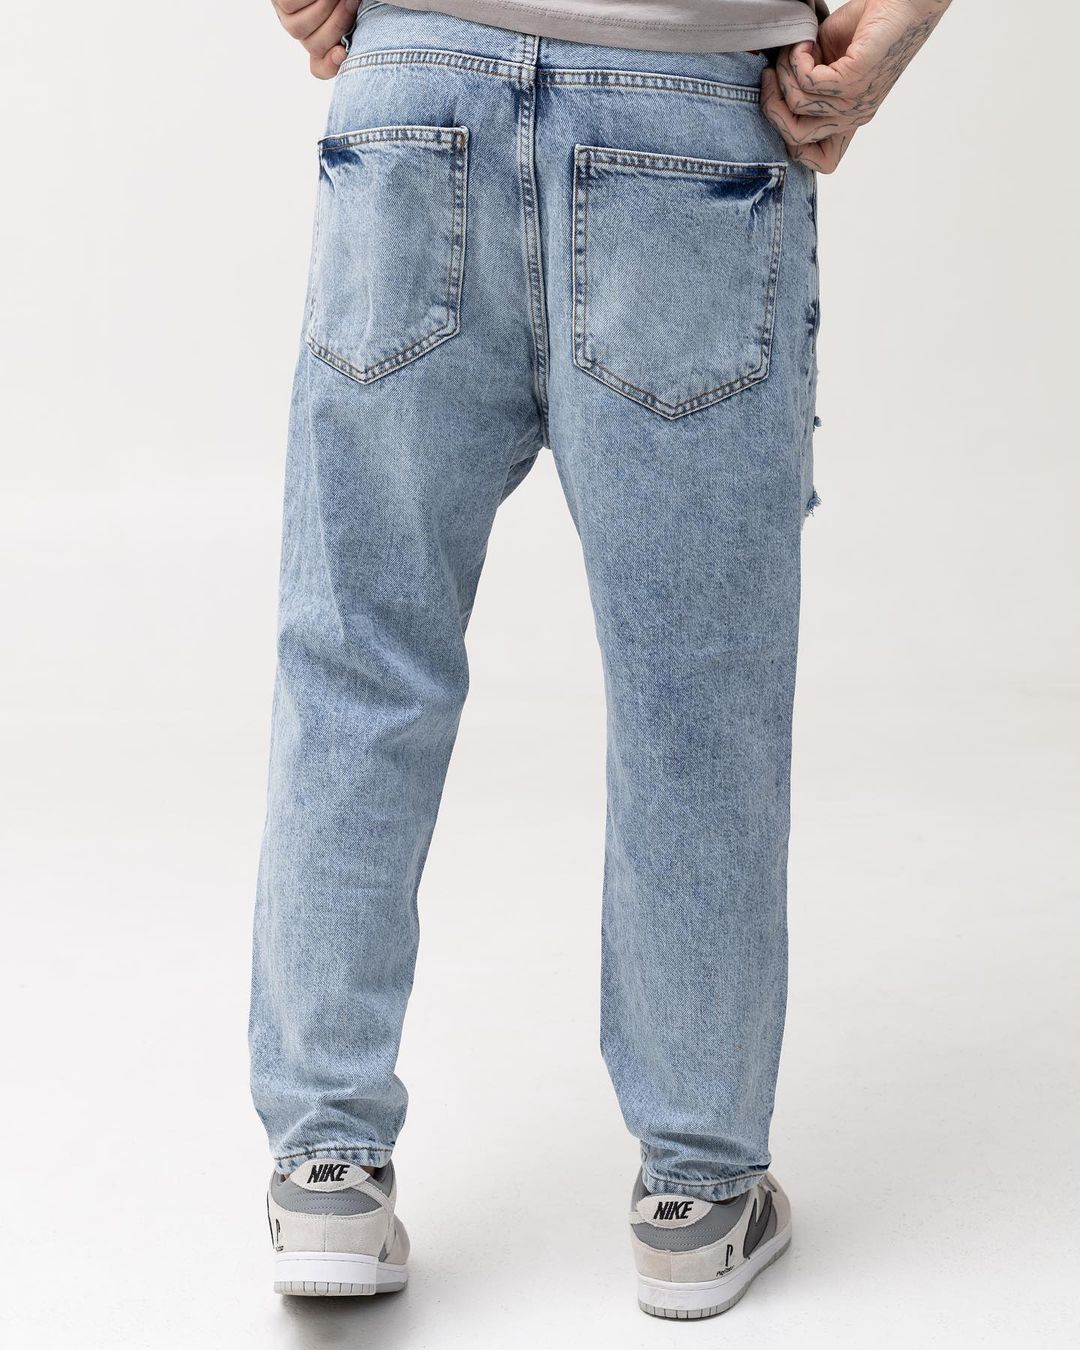 Чоловічі блакитні джинси BEZET з перфорацією - Фото 3